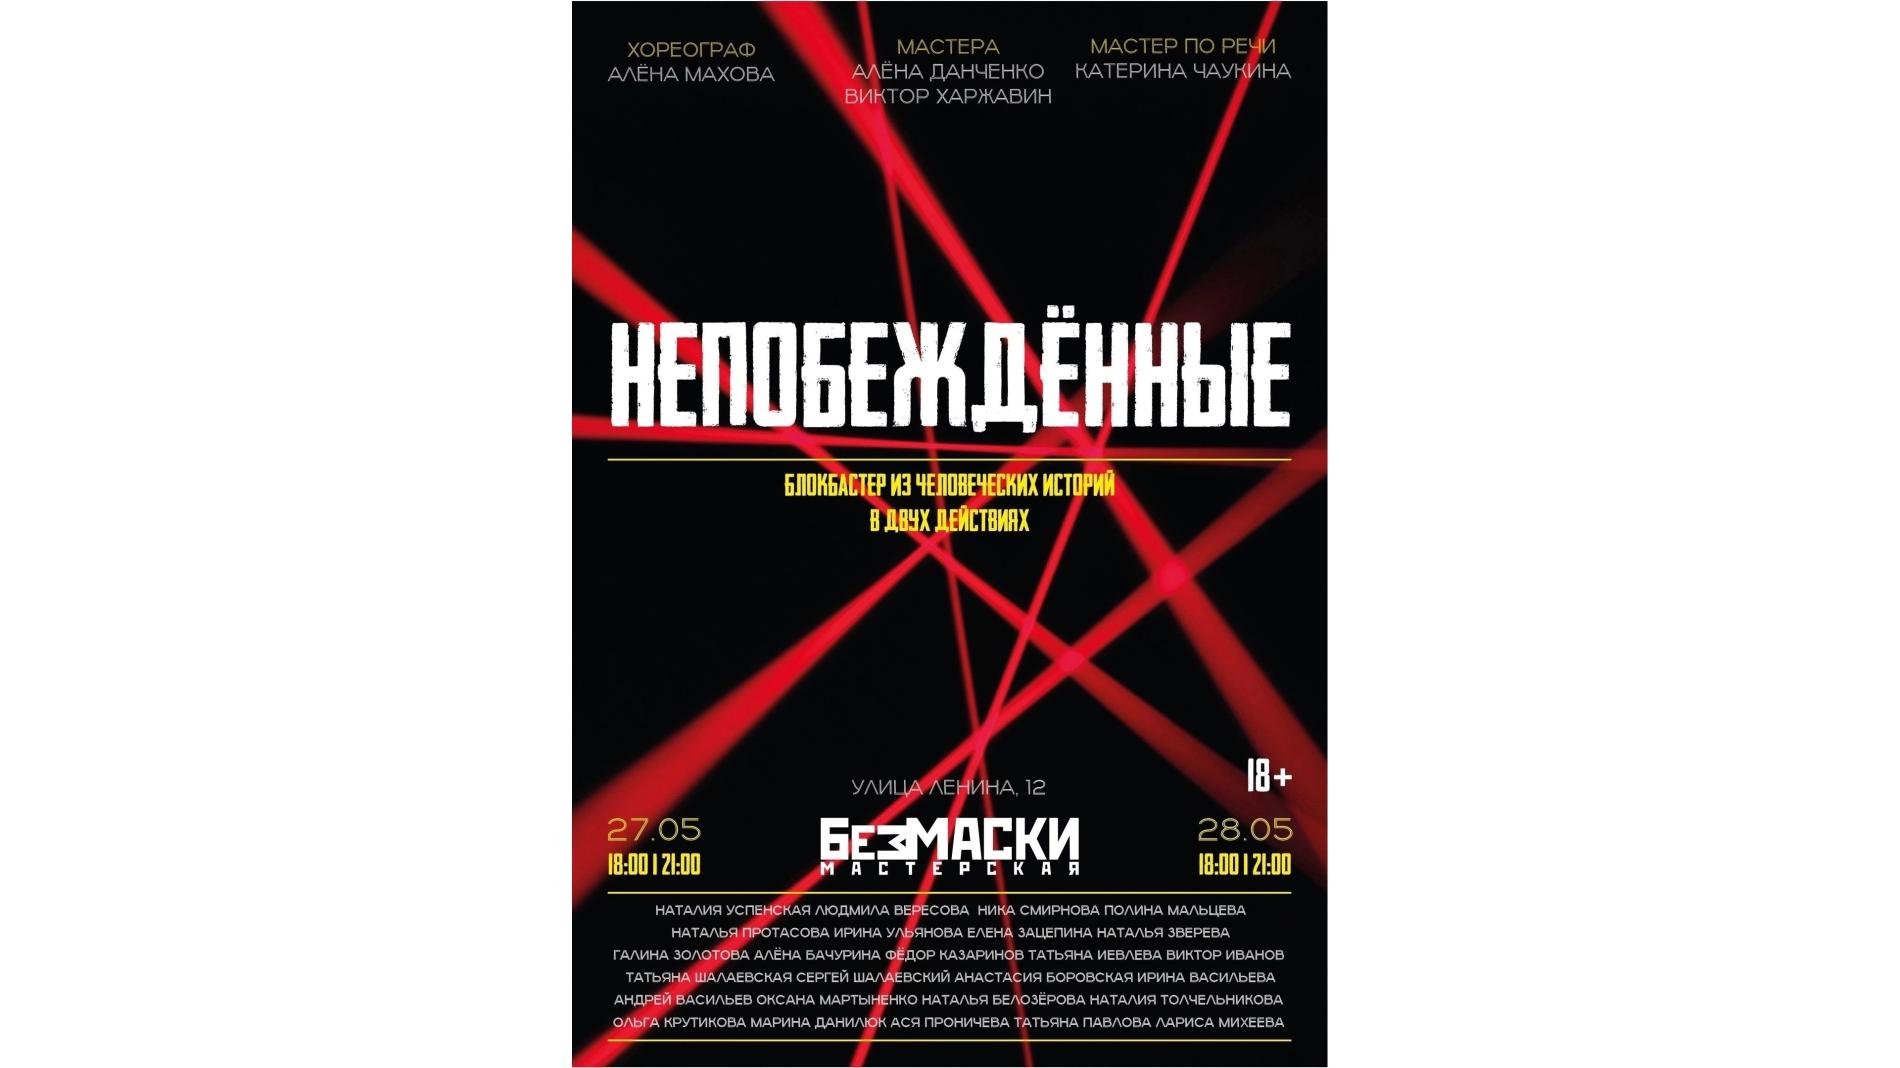 Вологжан приглашают на премьеру спектакля «Непобеждённые» 18+